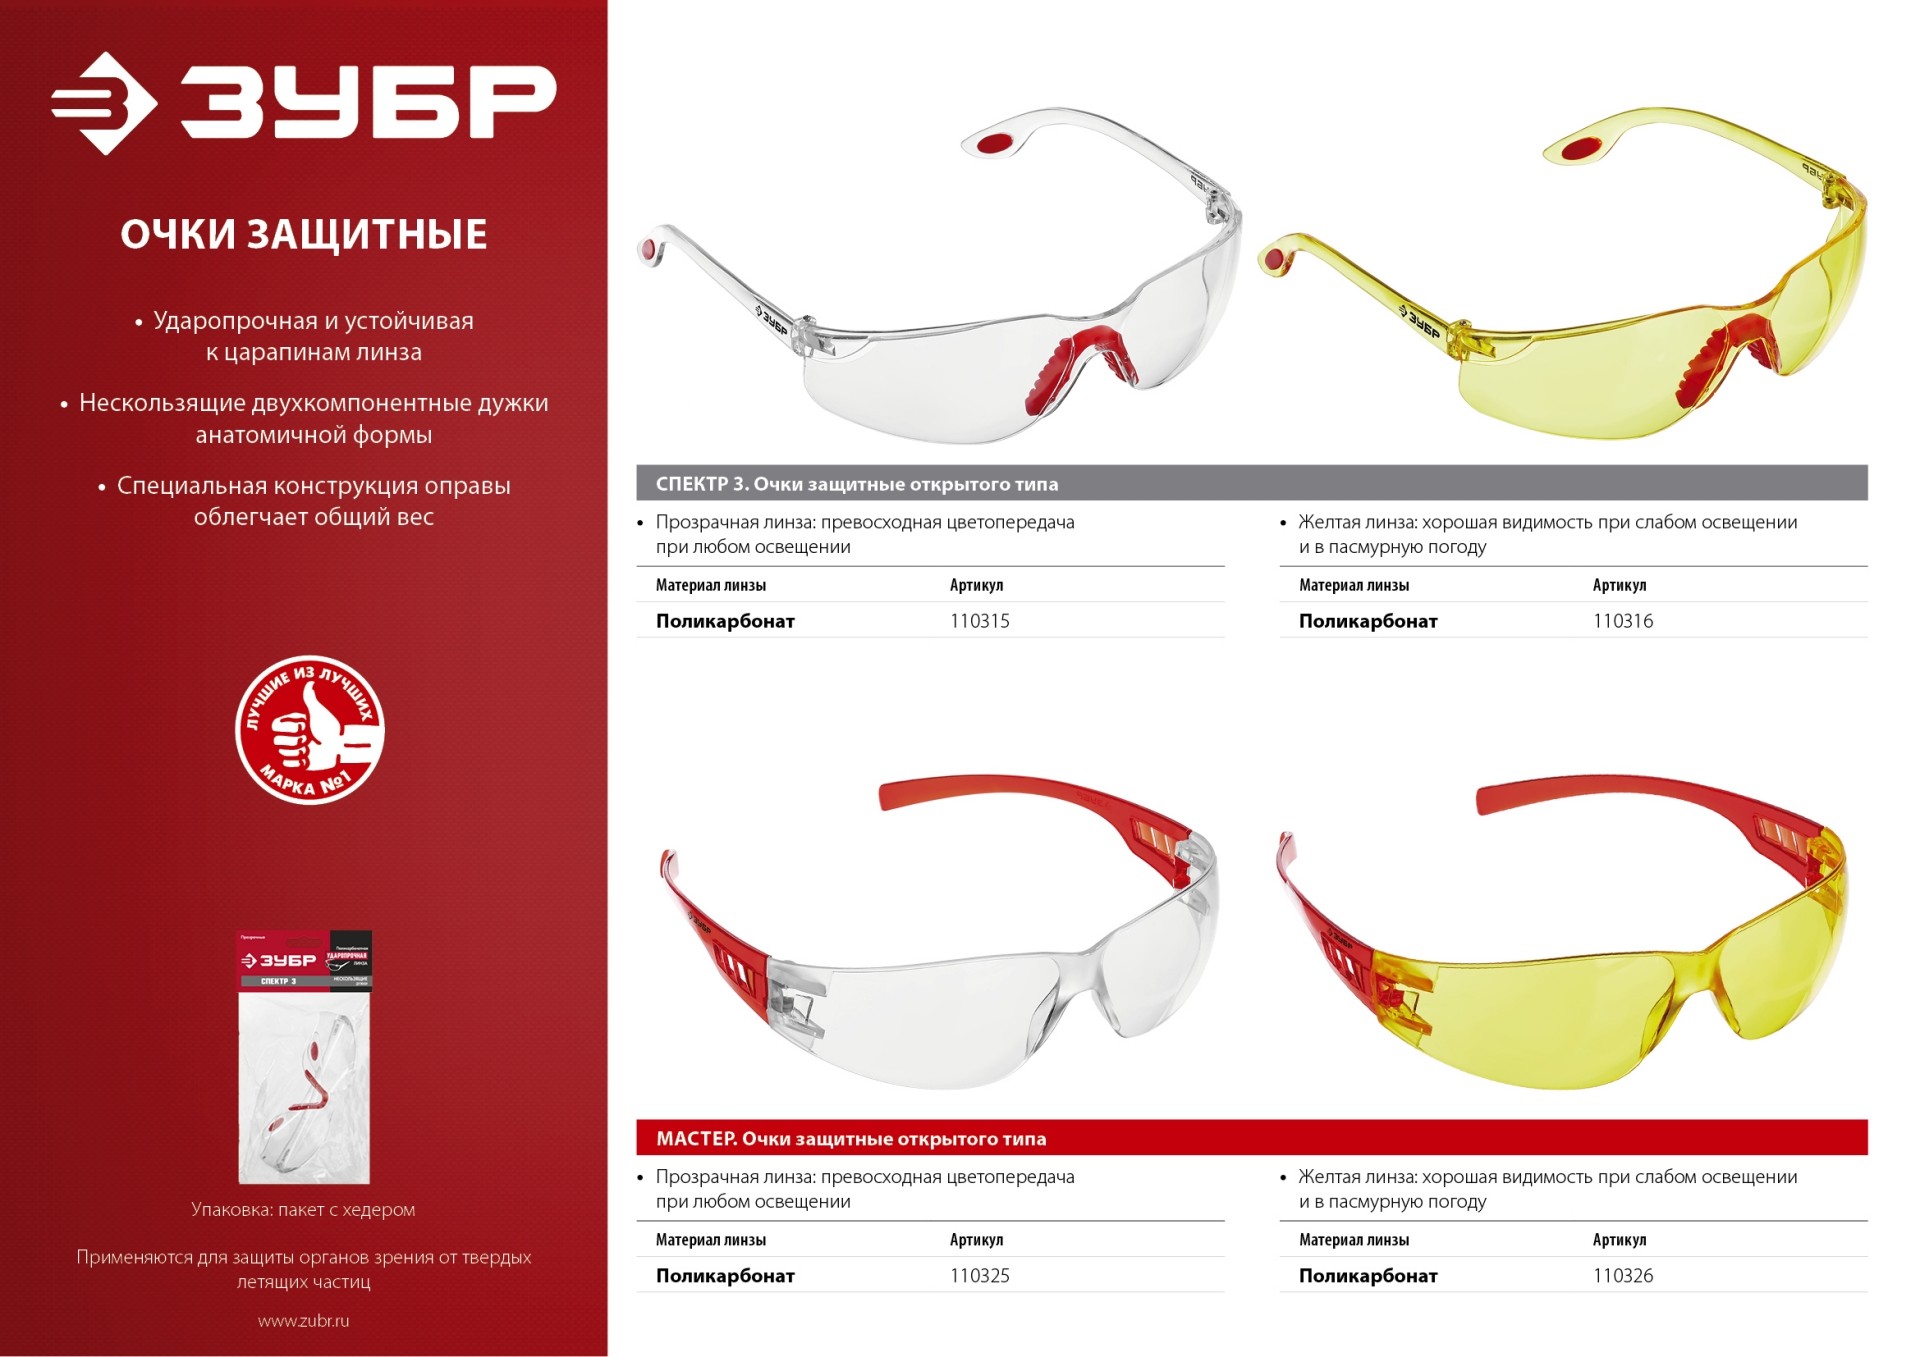 Очки защитные открытого типа ЗУБР Спектр 3 прозрачные, двухкомпонентные дужки.